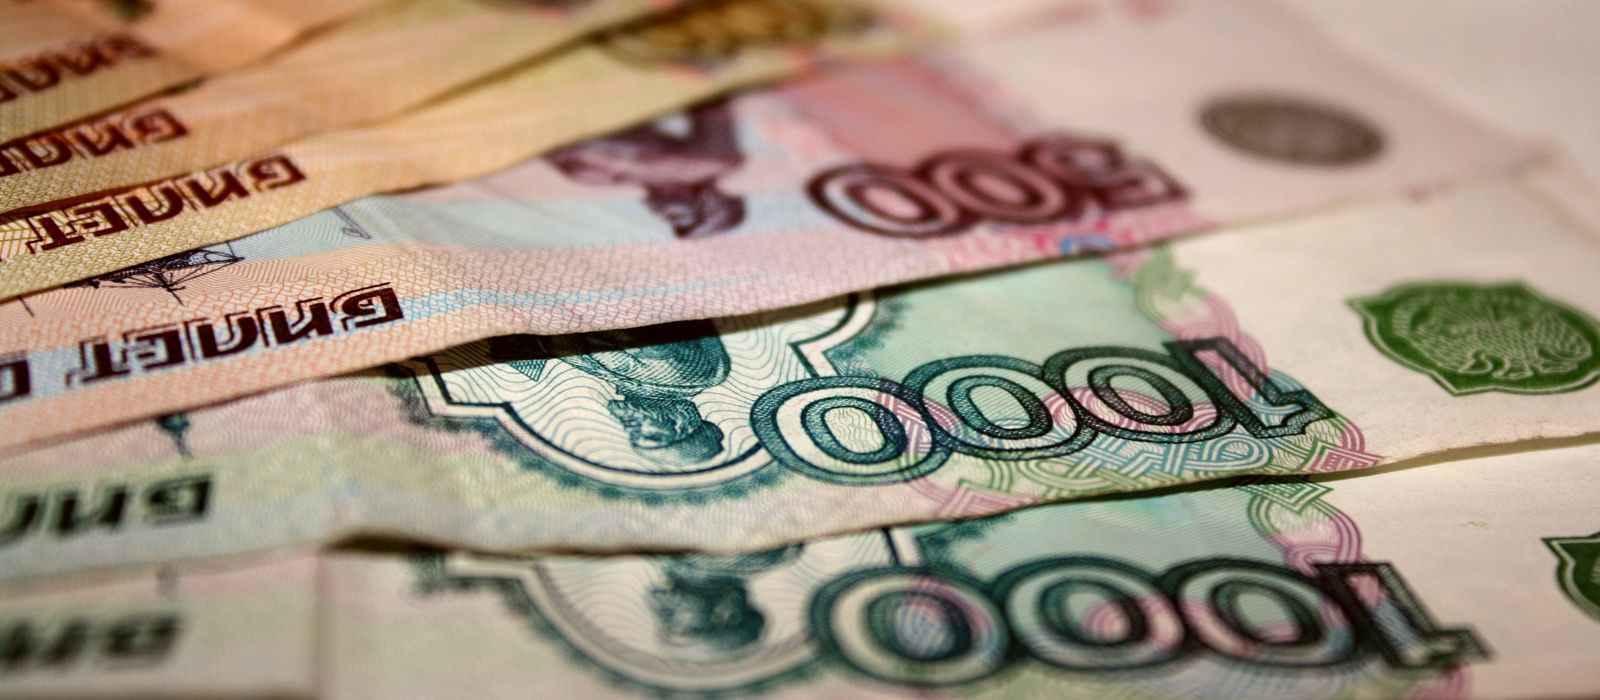 Материнский капитал увеличат до 470 тысяч рублей